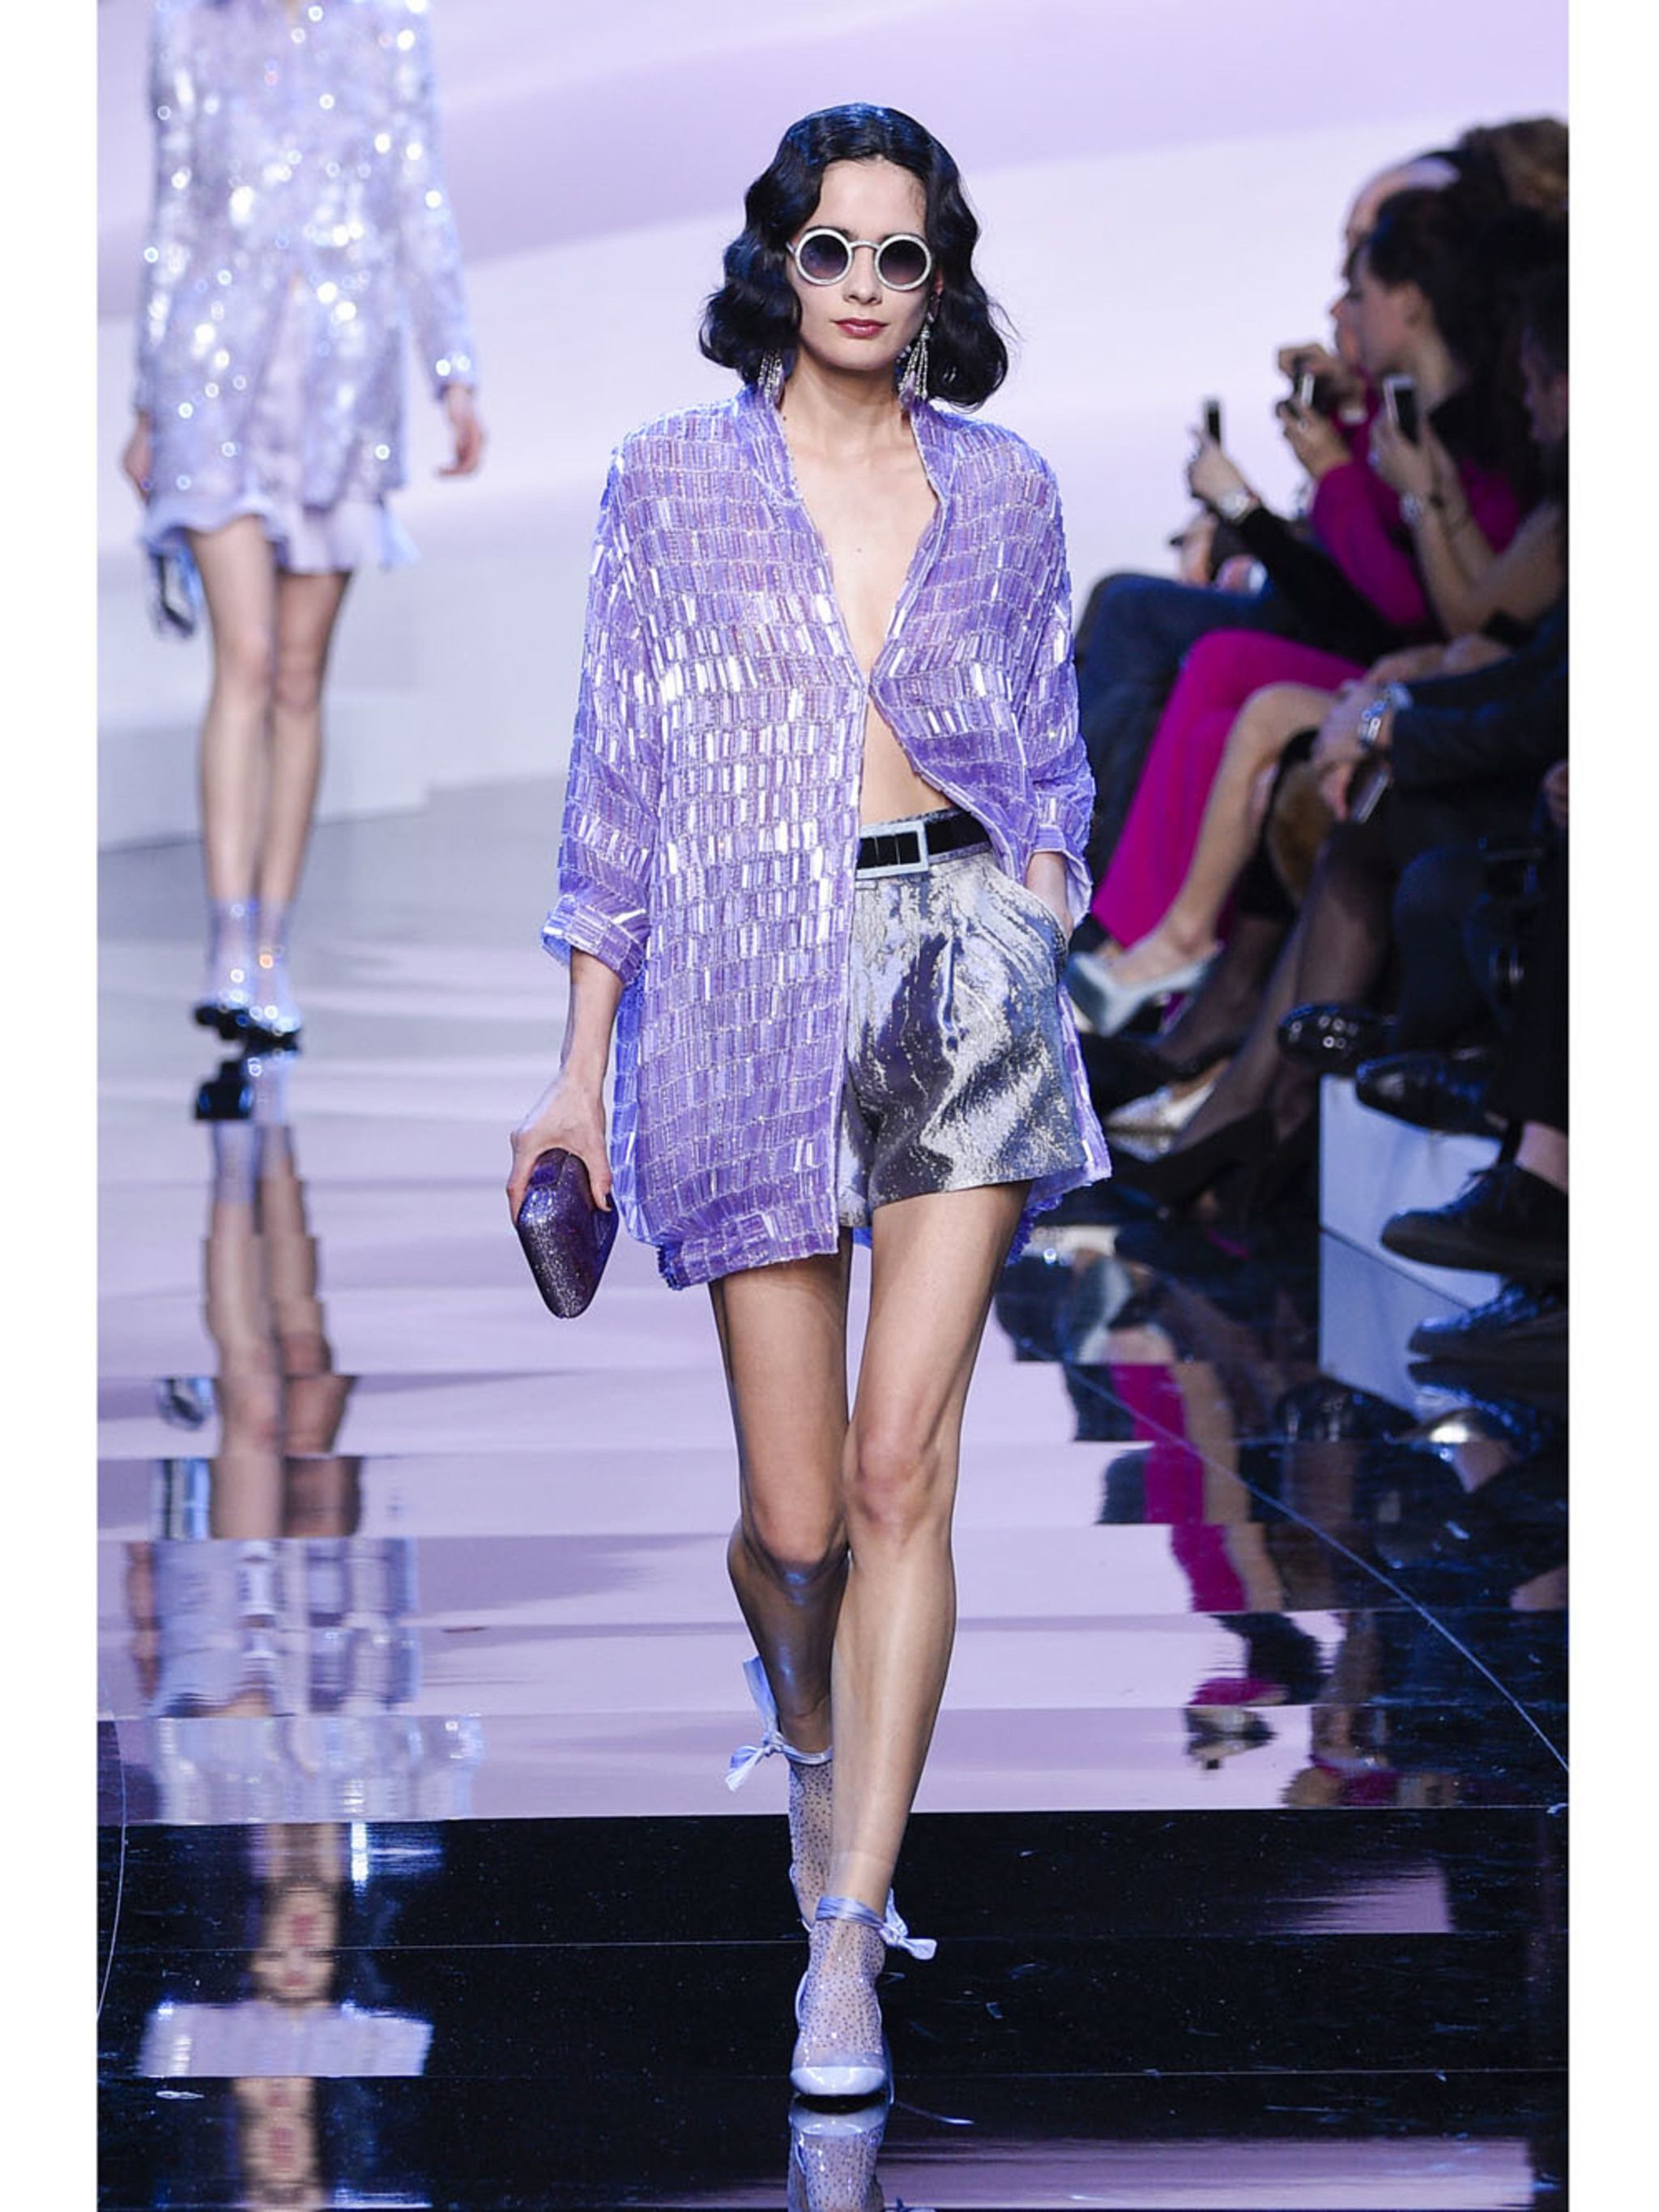 Strak Draak optie Giorgio Armani is heel stellig: lila is de kleur van Haute Couture s/s 2016